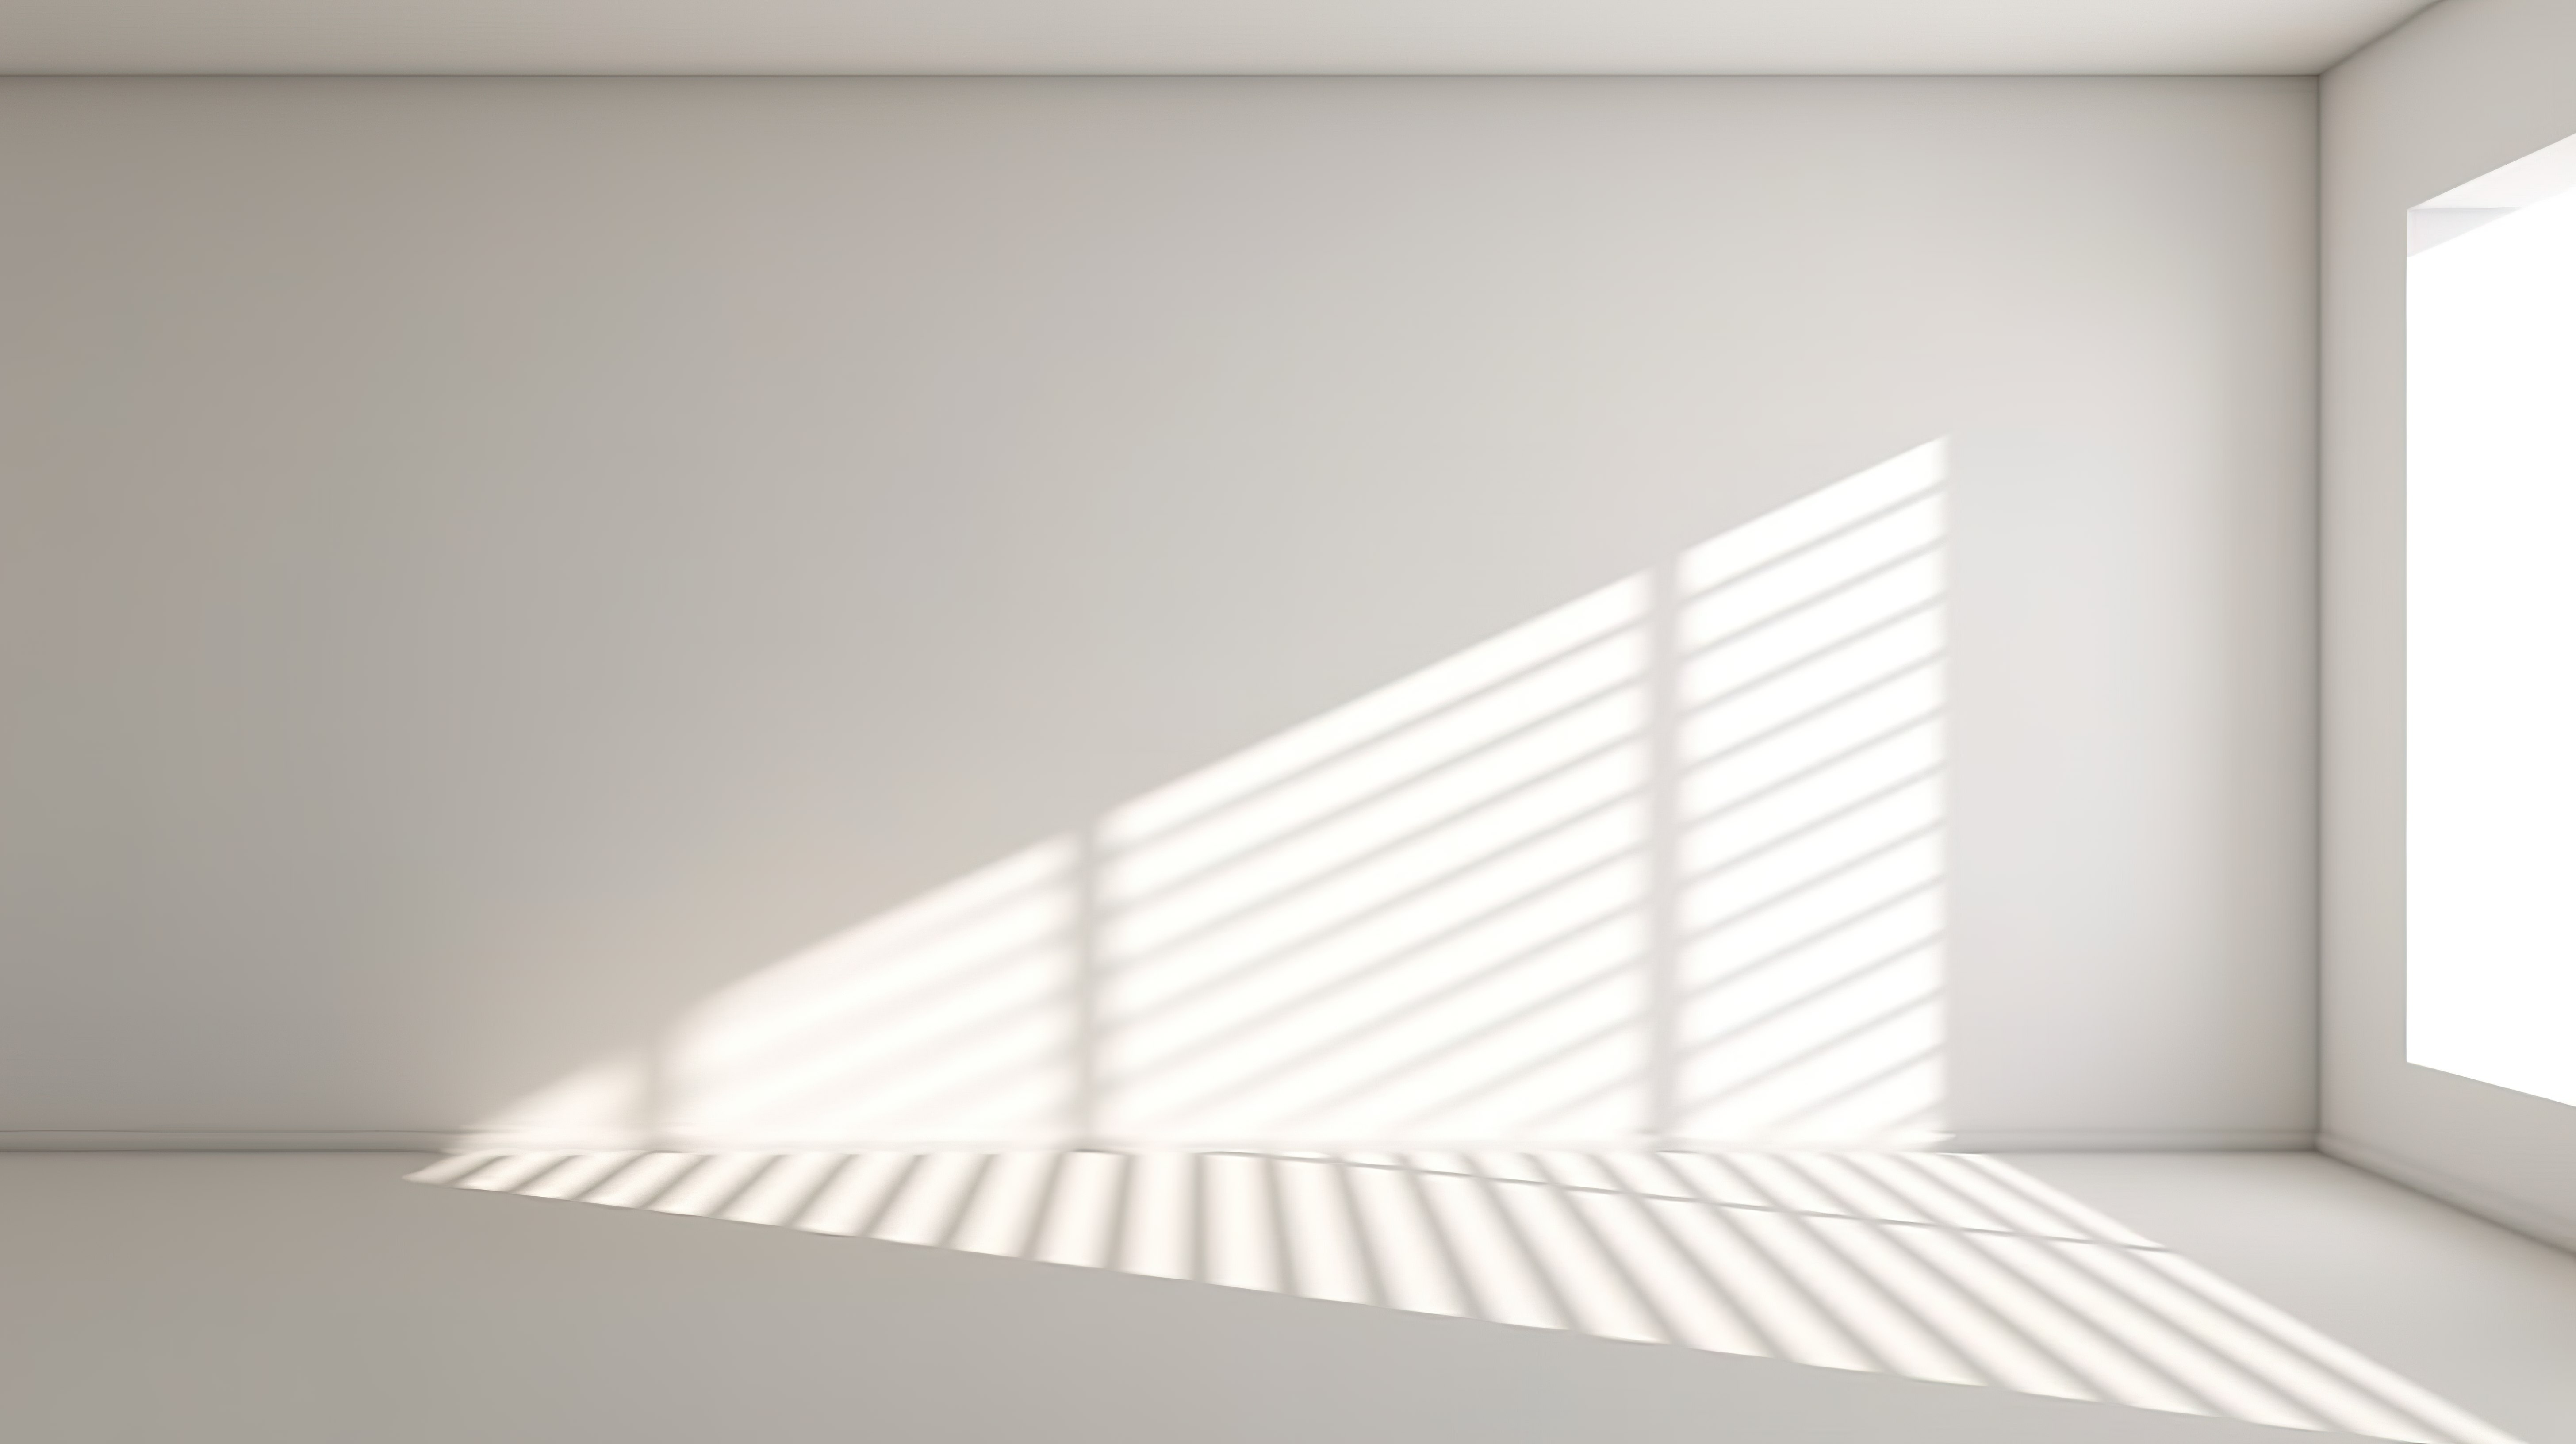 阳光反射下窗框在白墙上投射阴影效果的真实 3D 渲染图片